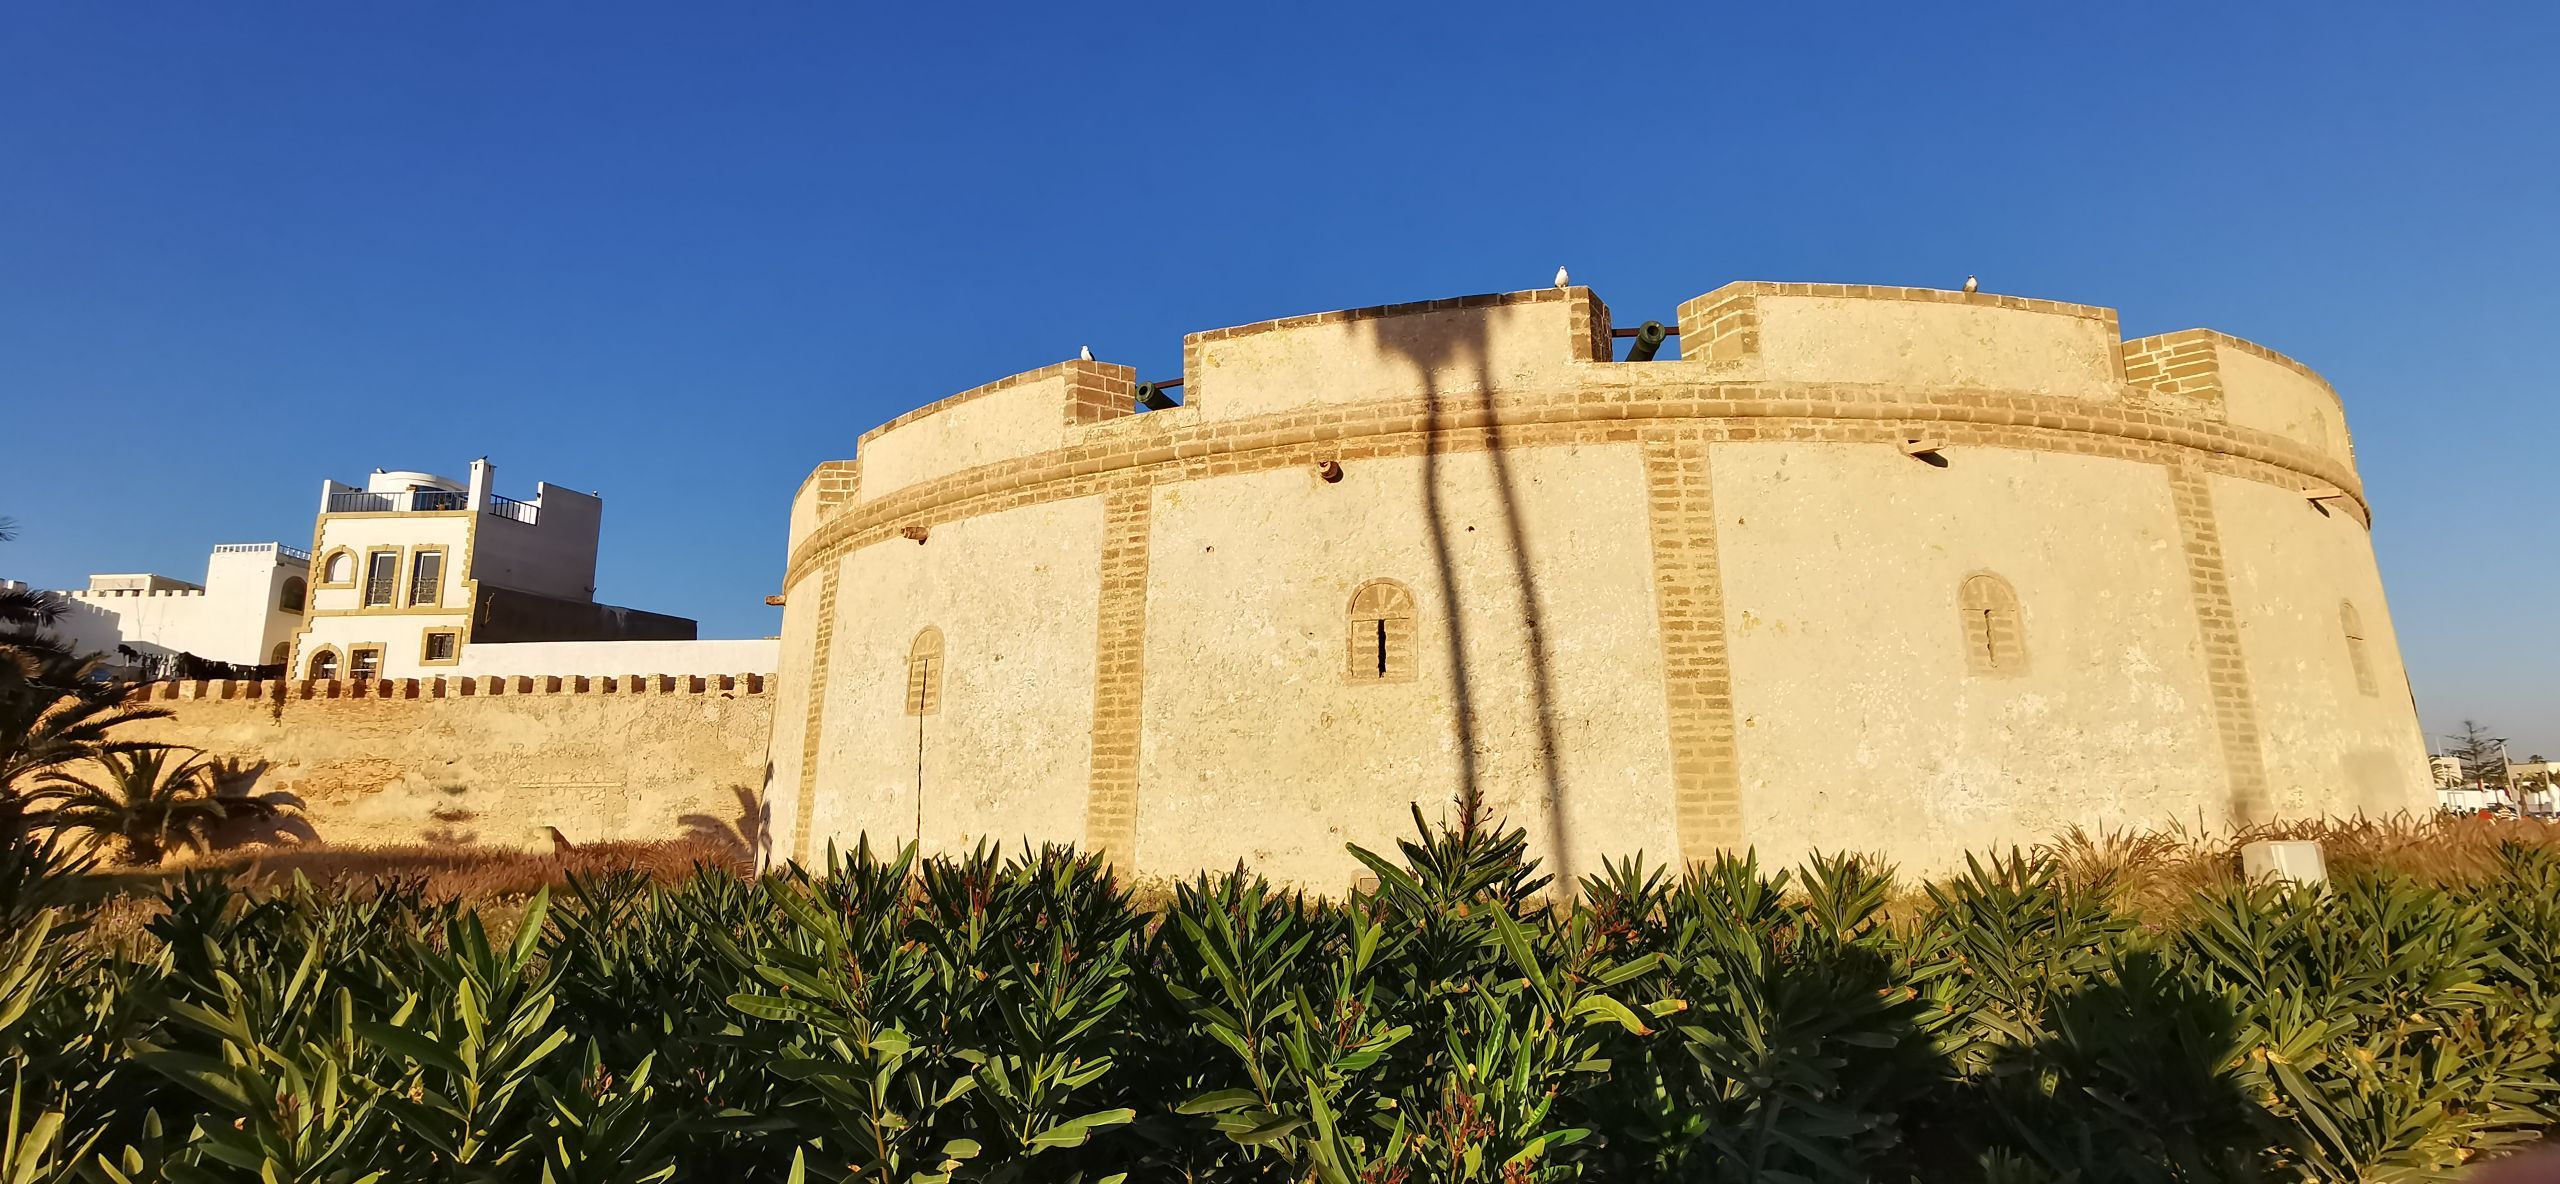 索维拉：夕阳与古城 麦迪那老城区   索维拉是摩洛哥的较远的一个古城，不是热门景点，国内游客较少，大